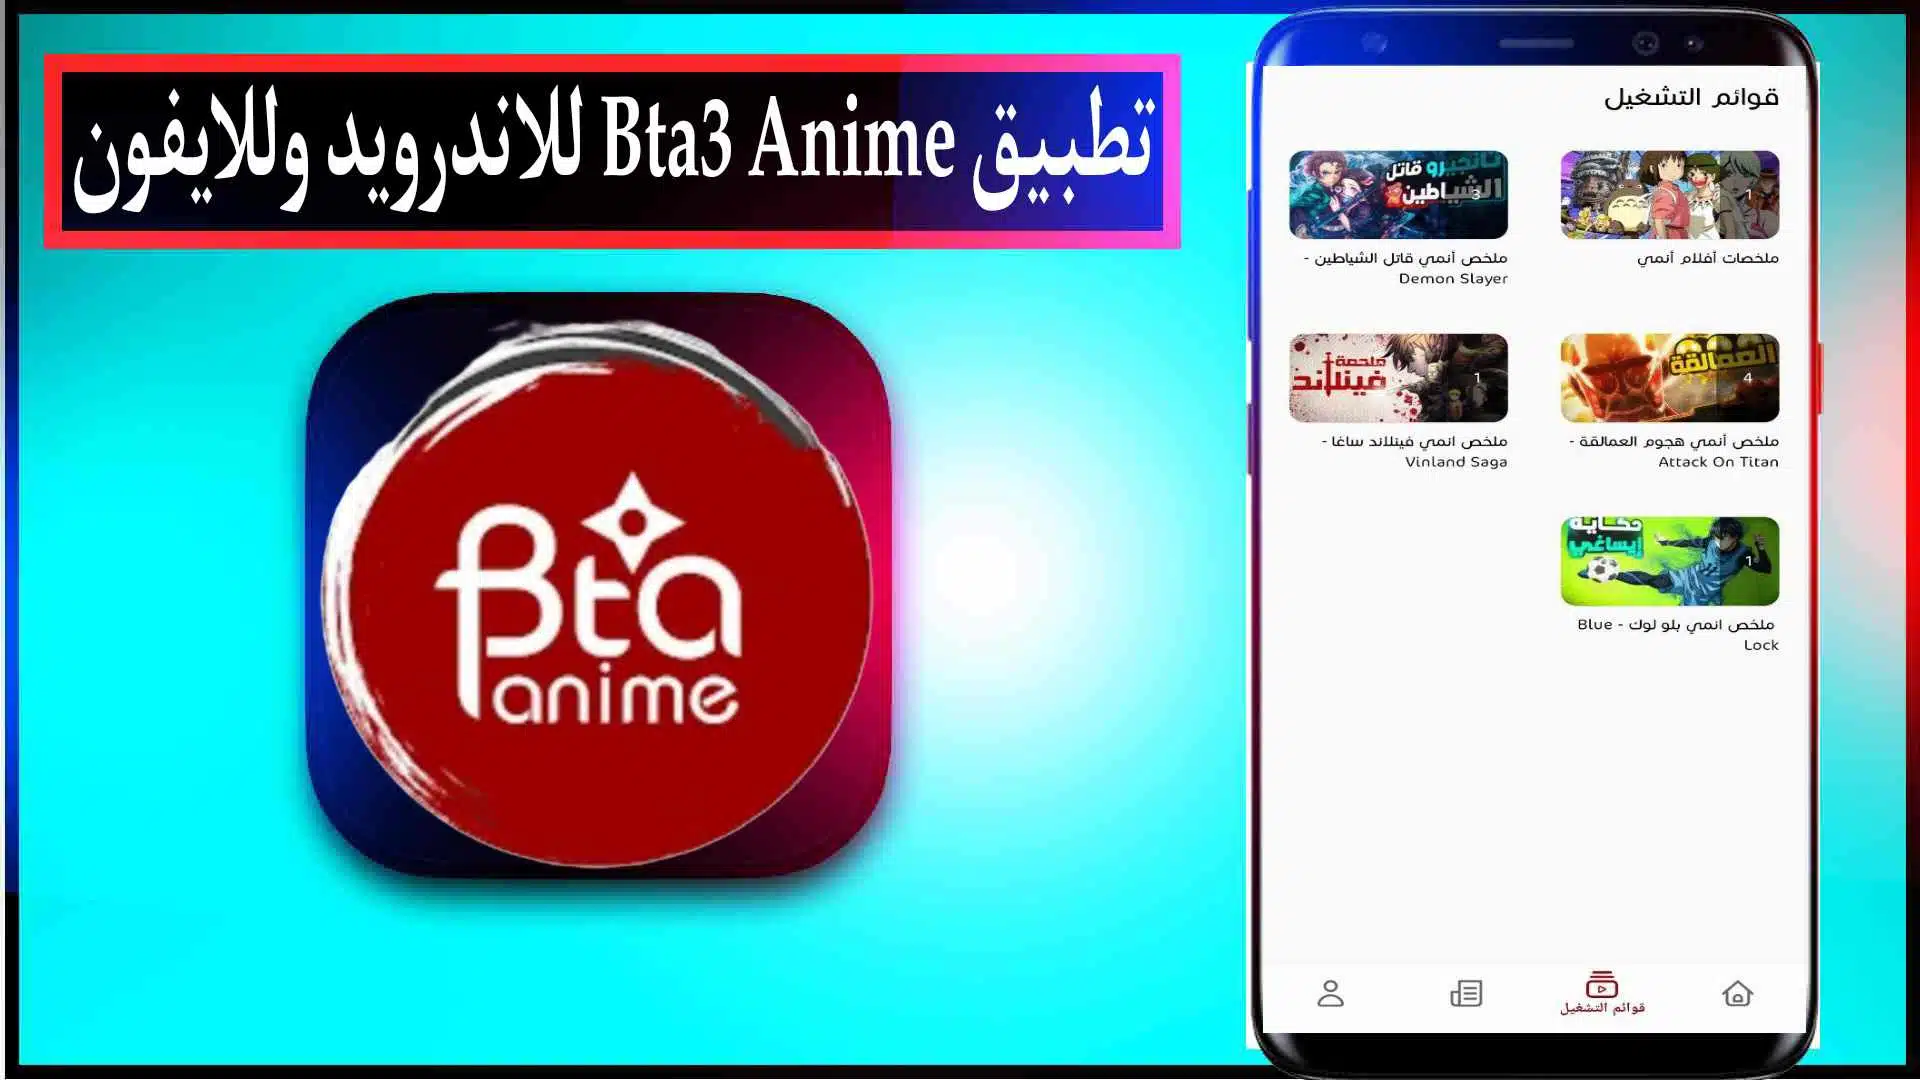 تحميل تطبيق بتاع انمي bta3 anime لمشاهدة الانمي للاندرويد وللايفون اخر اصدار مجانا 2